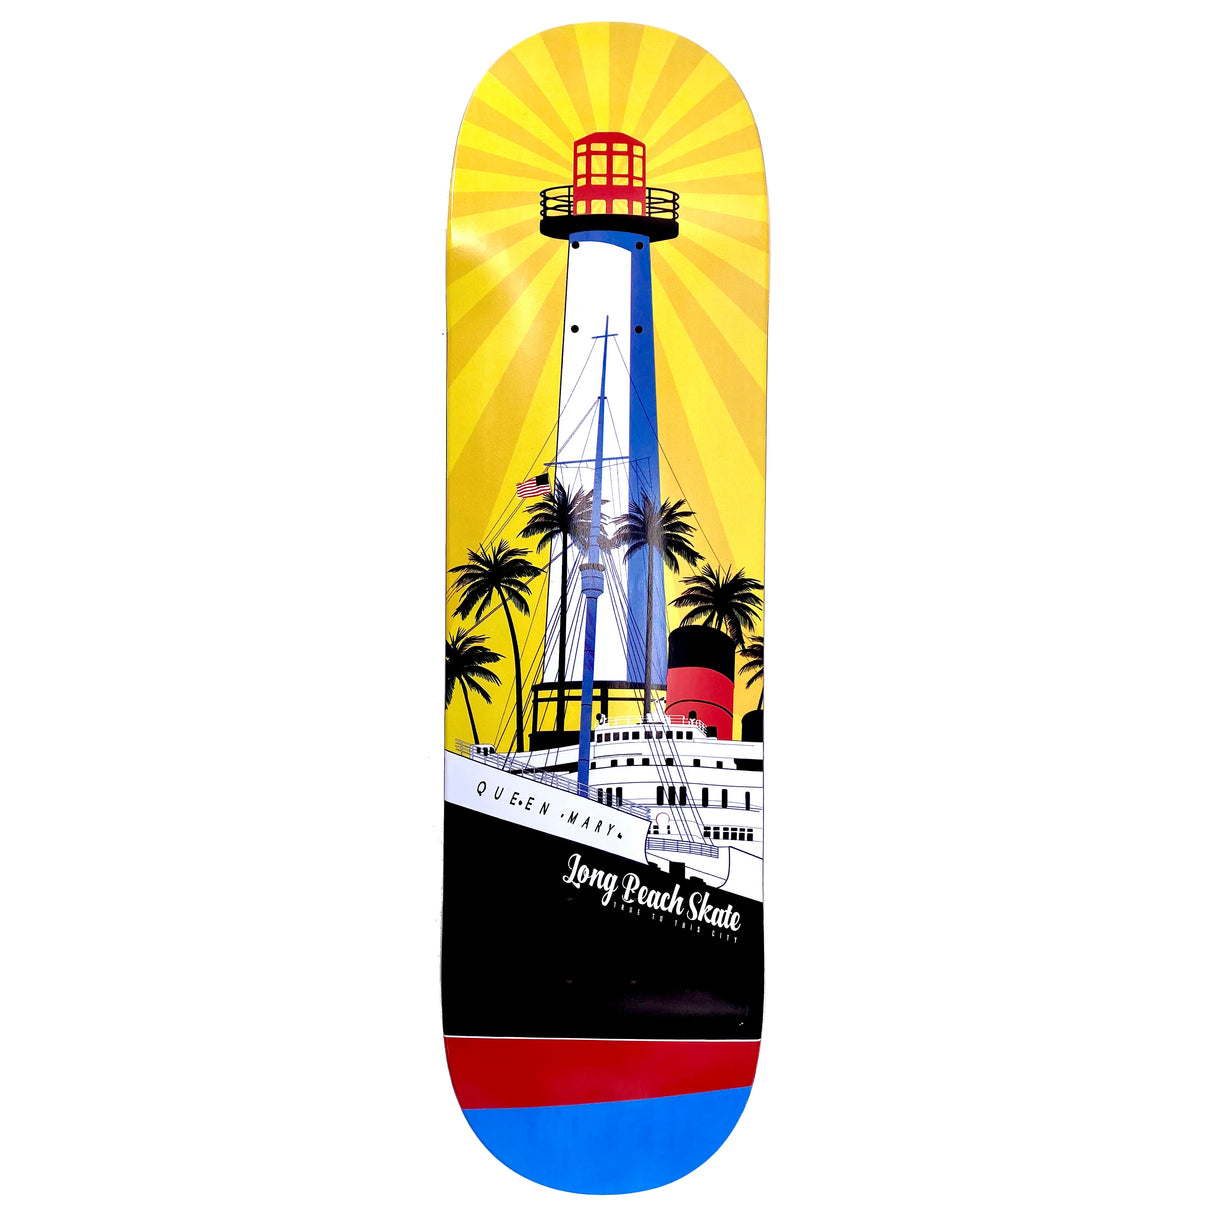 Long Beach Skate Co. "Rising Sun on Light Mary" Gold Red Blue 7.75" Skateboard Deck